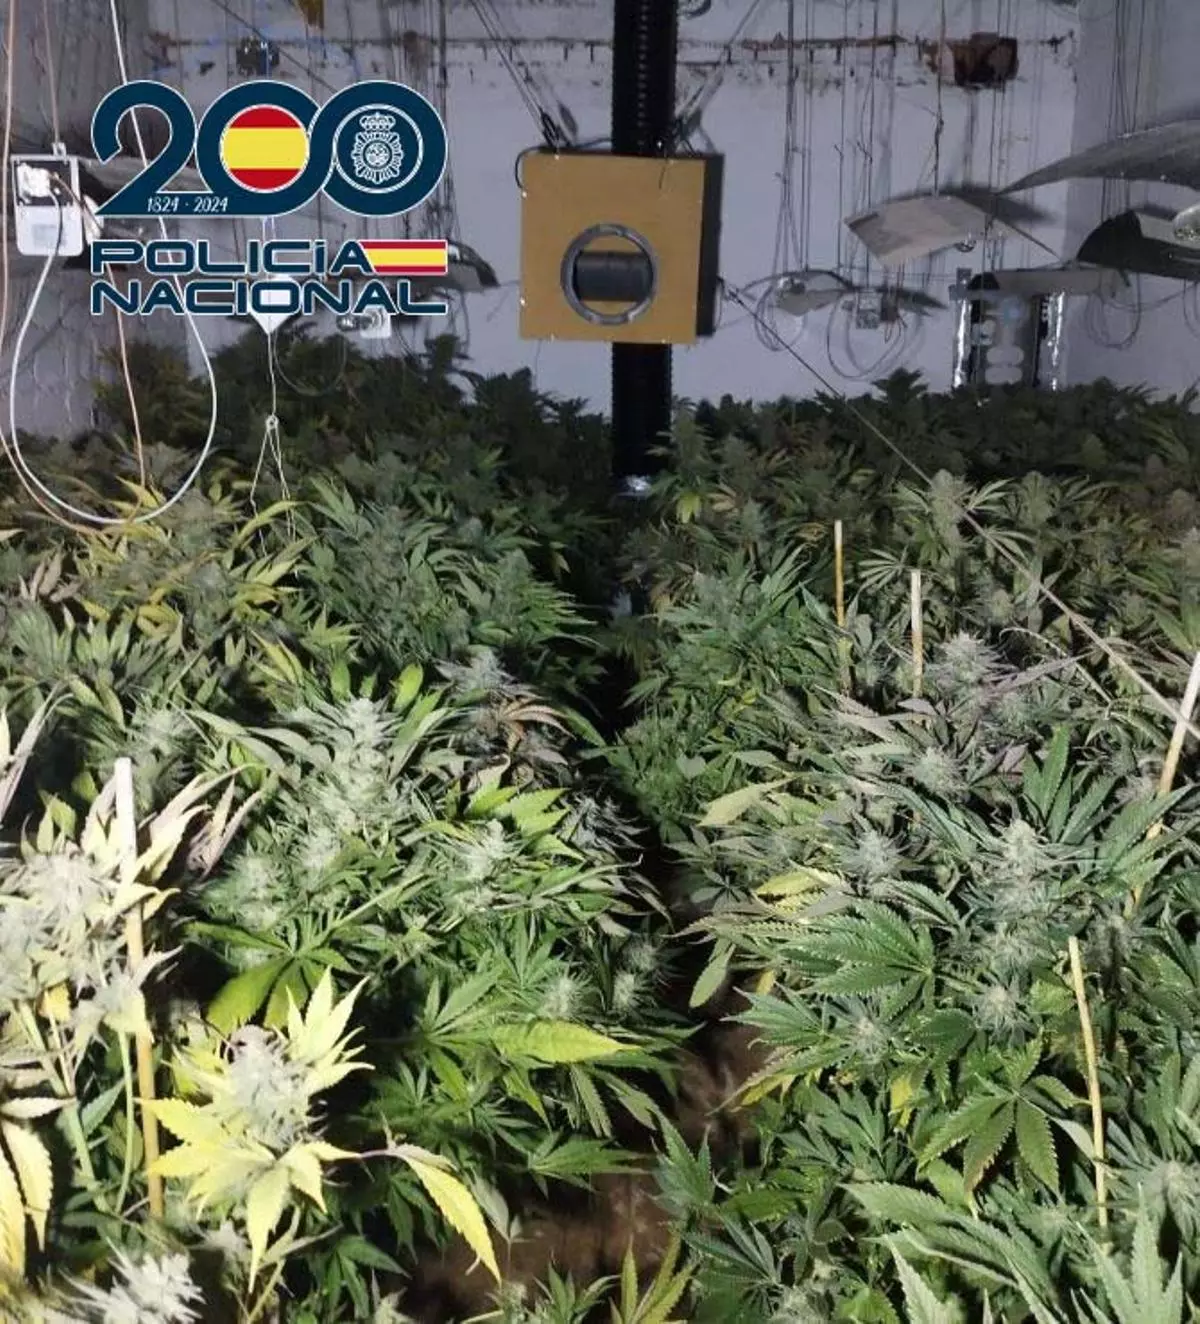 La Policía Nacional interviene casi 300 plantas de marihuana en la barriada de Tulio